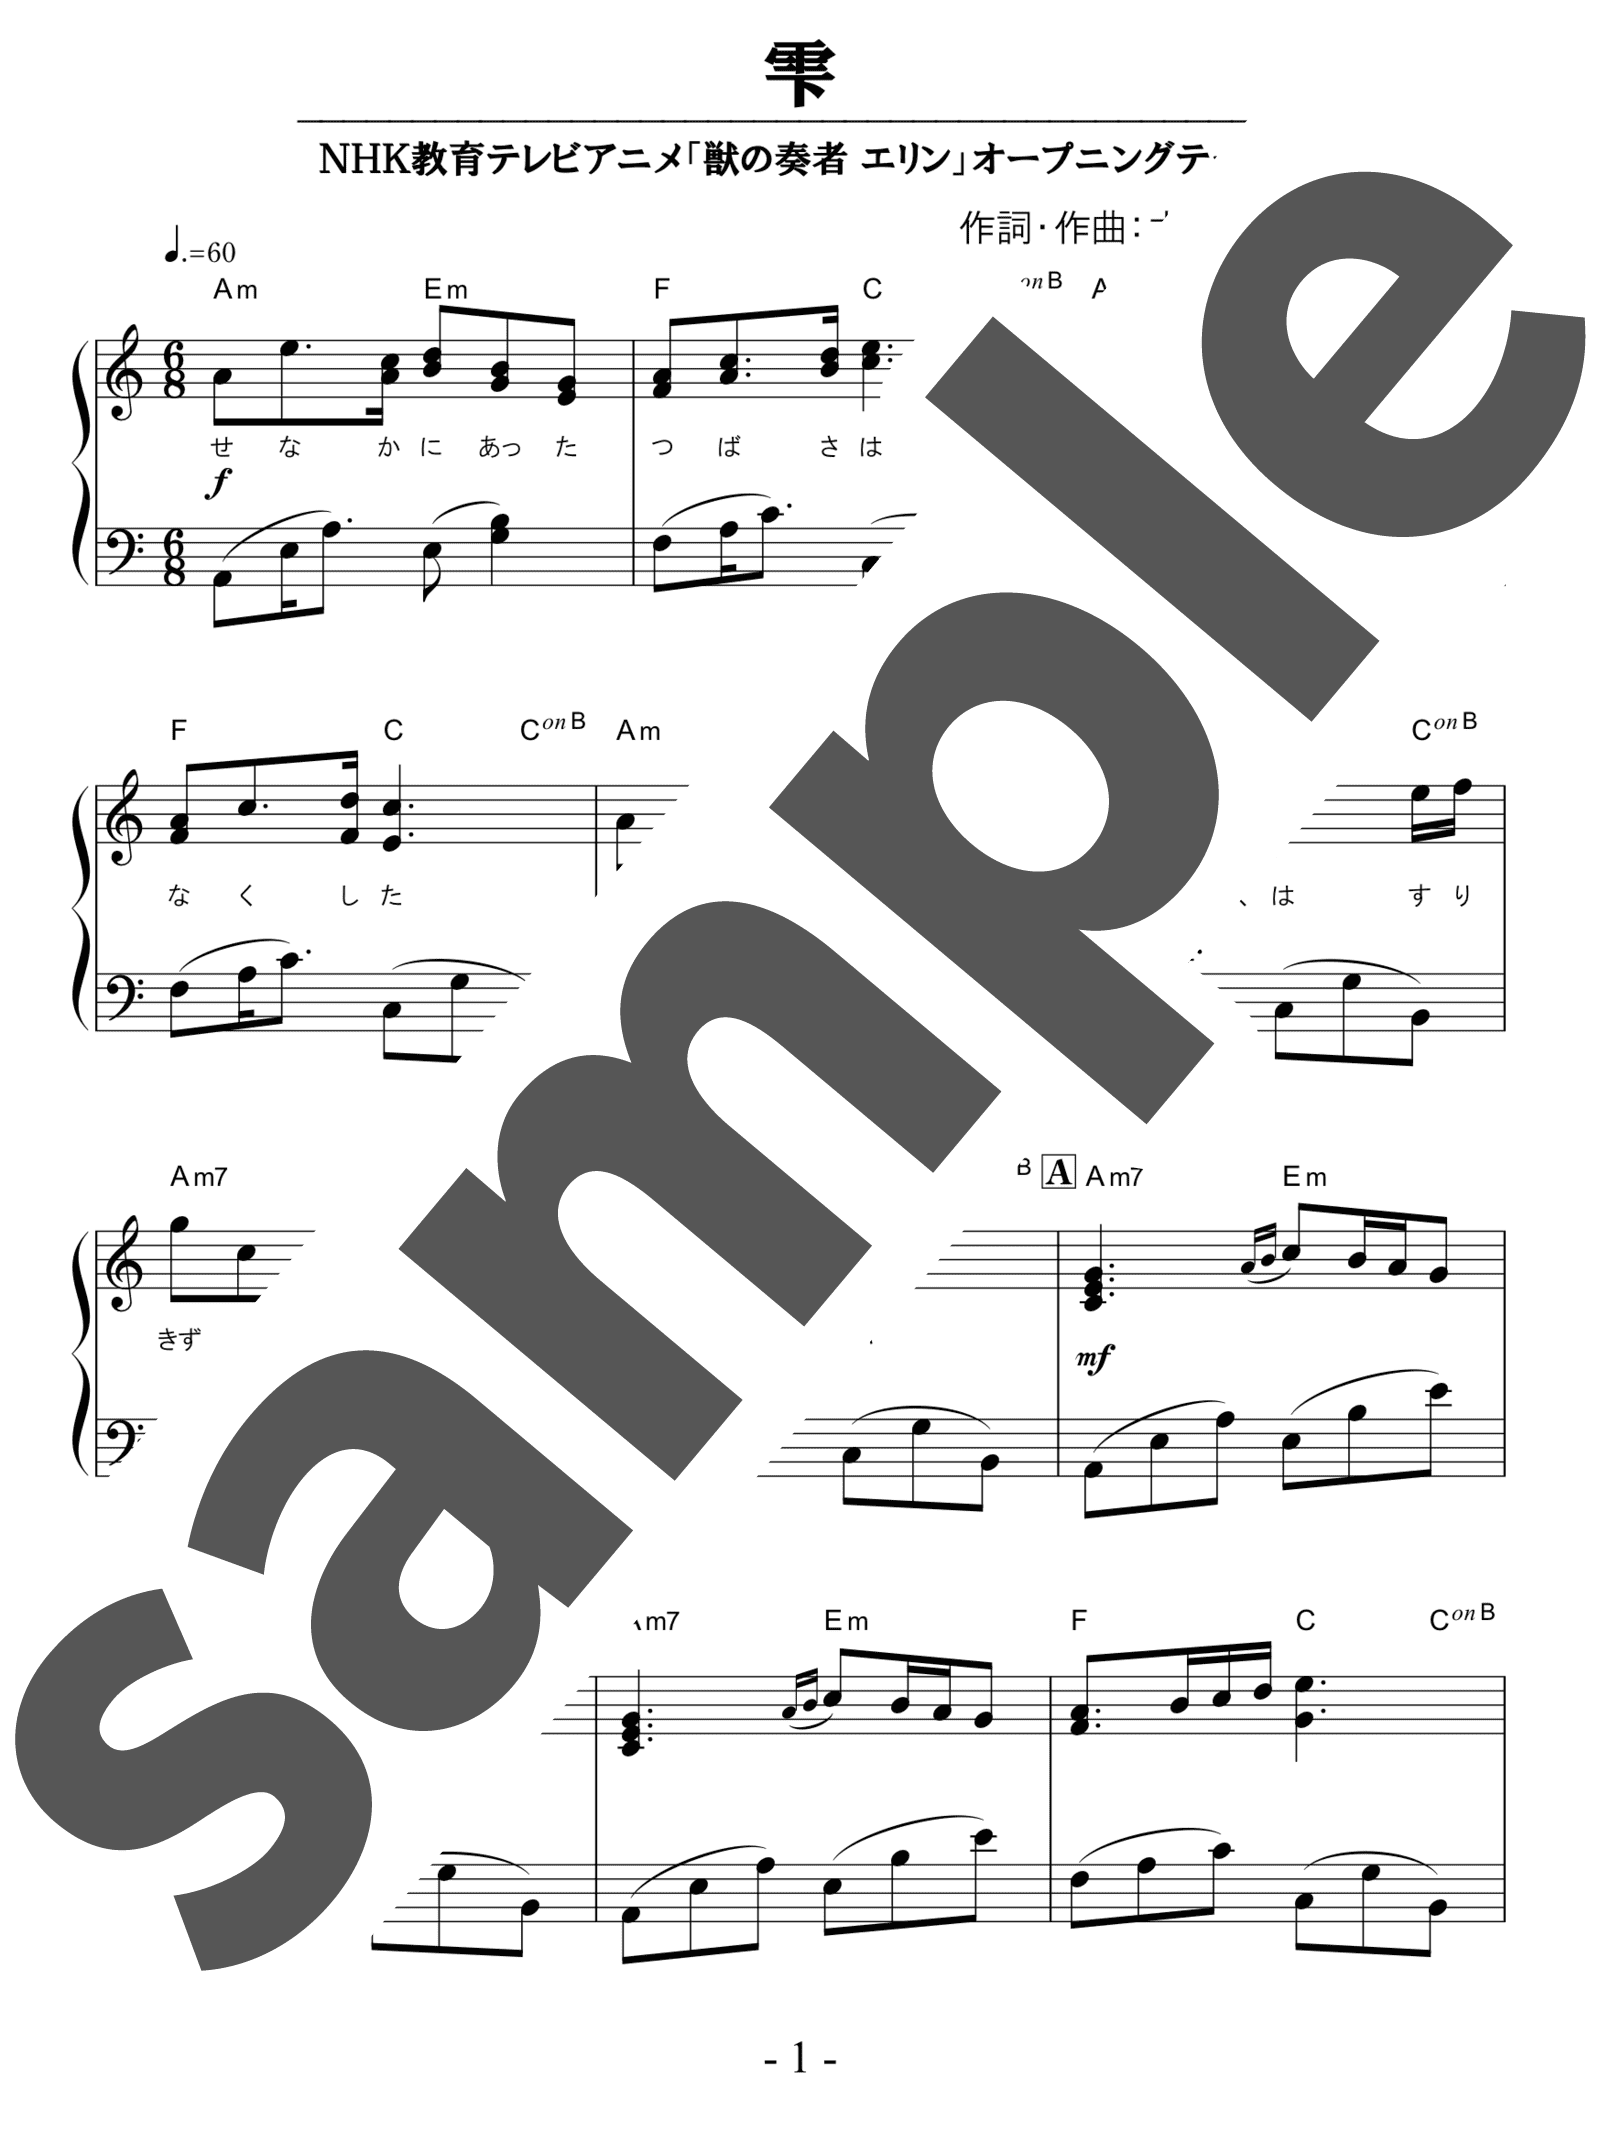 ピアノ楽譜 雫 スキマスイッチ 初中級 楽譜アプリ フェアリー